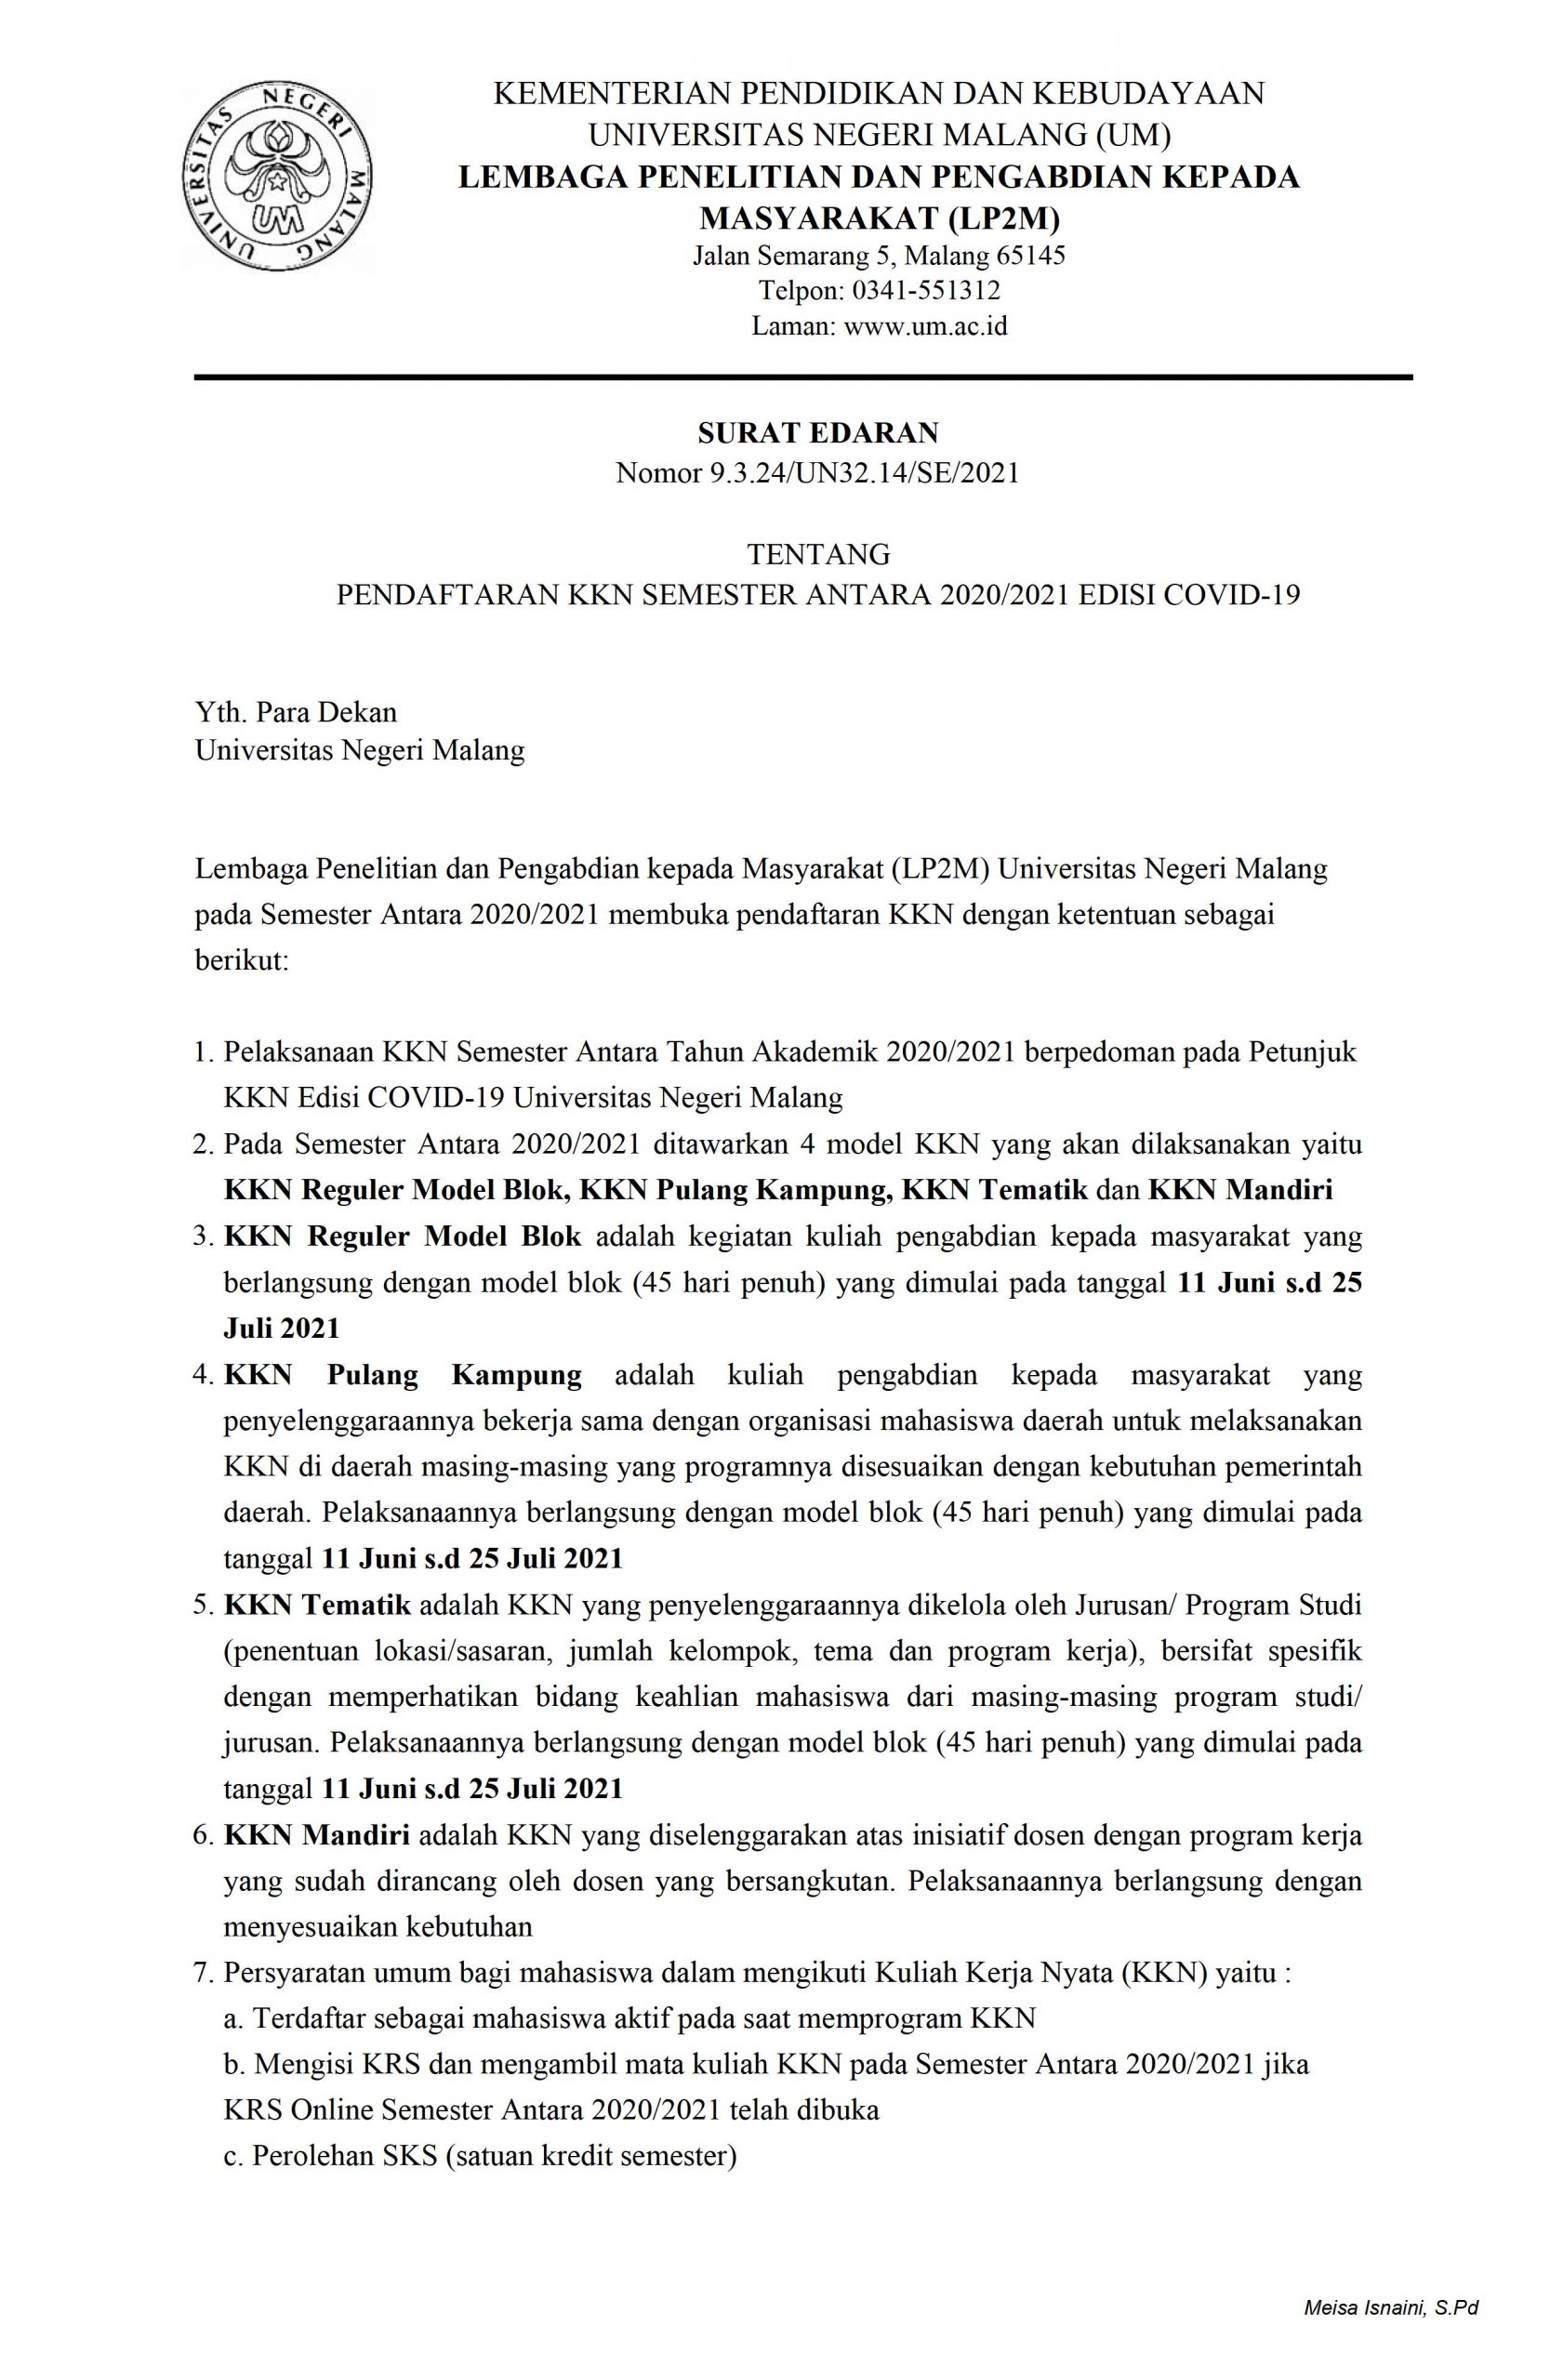 Pendaftaran KKN Semester Antara 2020-2021 Edisi Covid-19 Universitas Negeri Malang